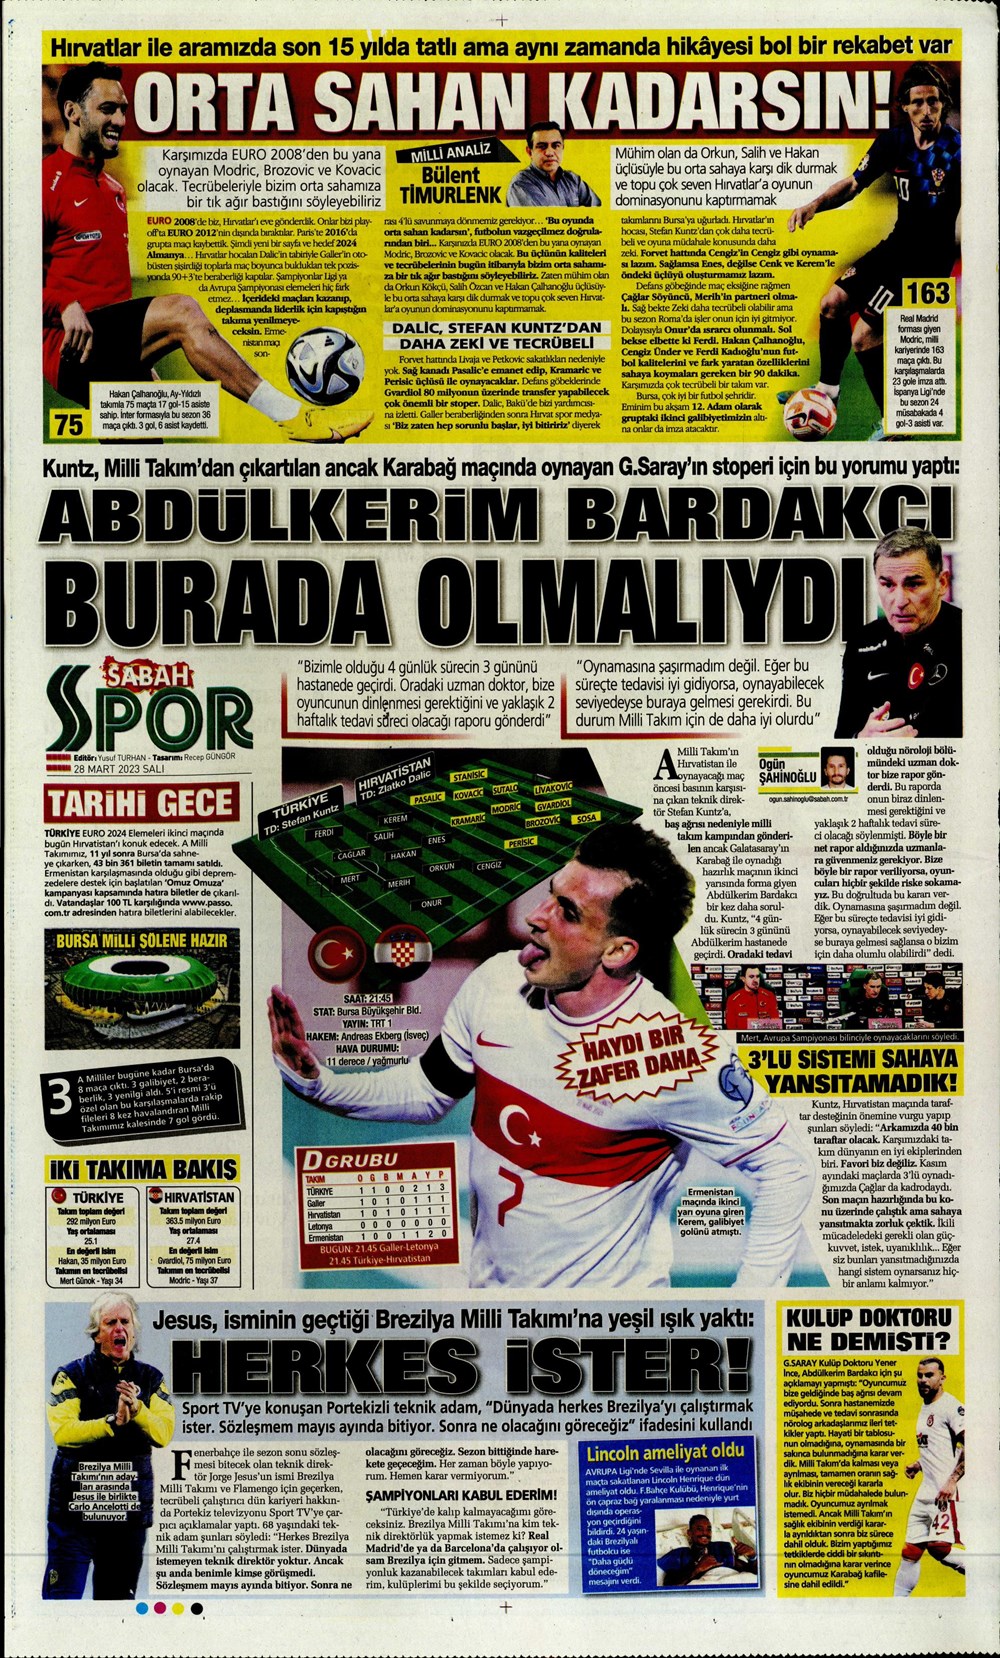 "Vurduğumuz gol olsun" - Sporun manşetleri - 27. Foto